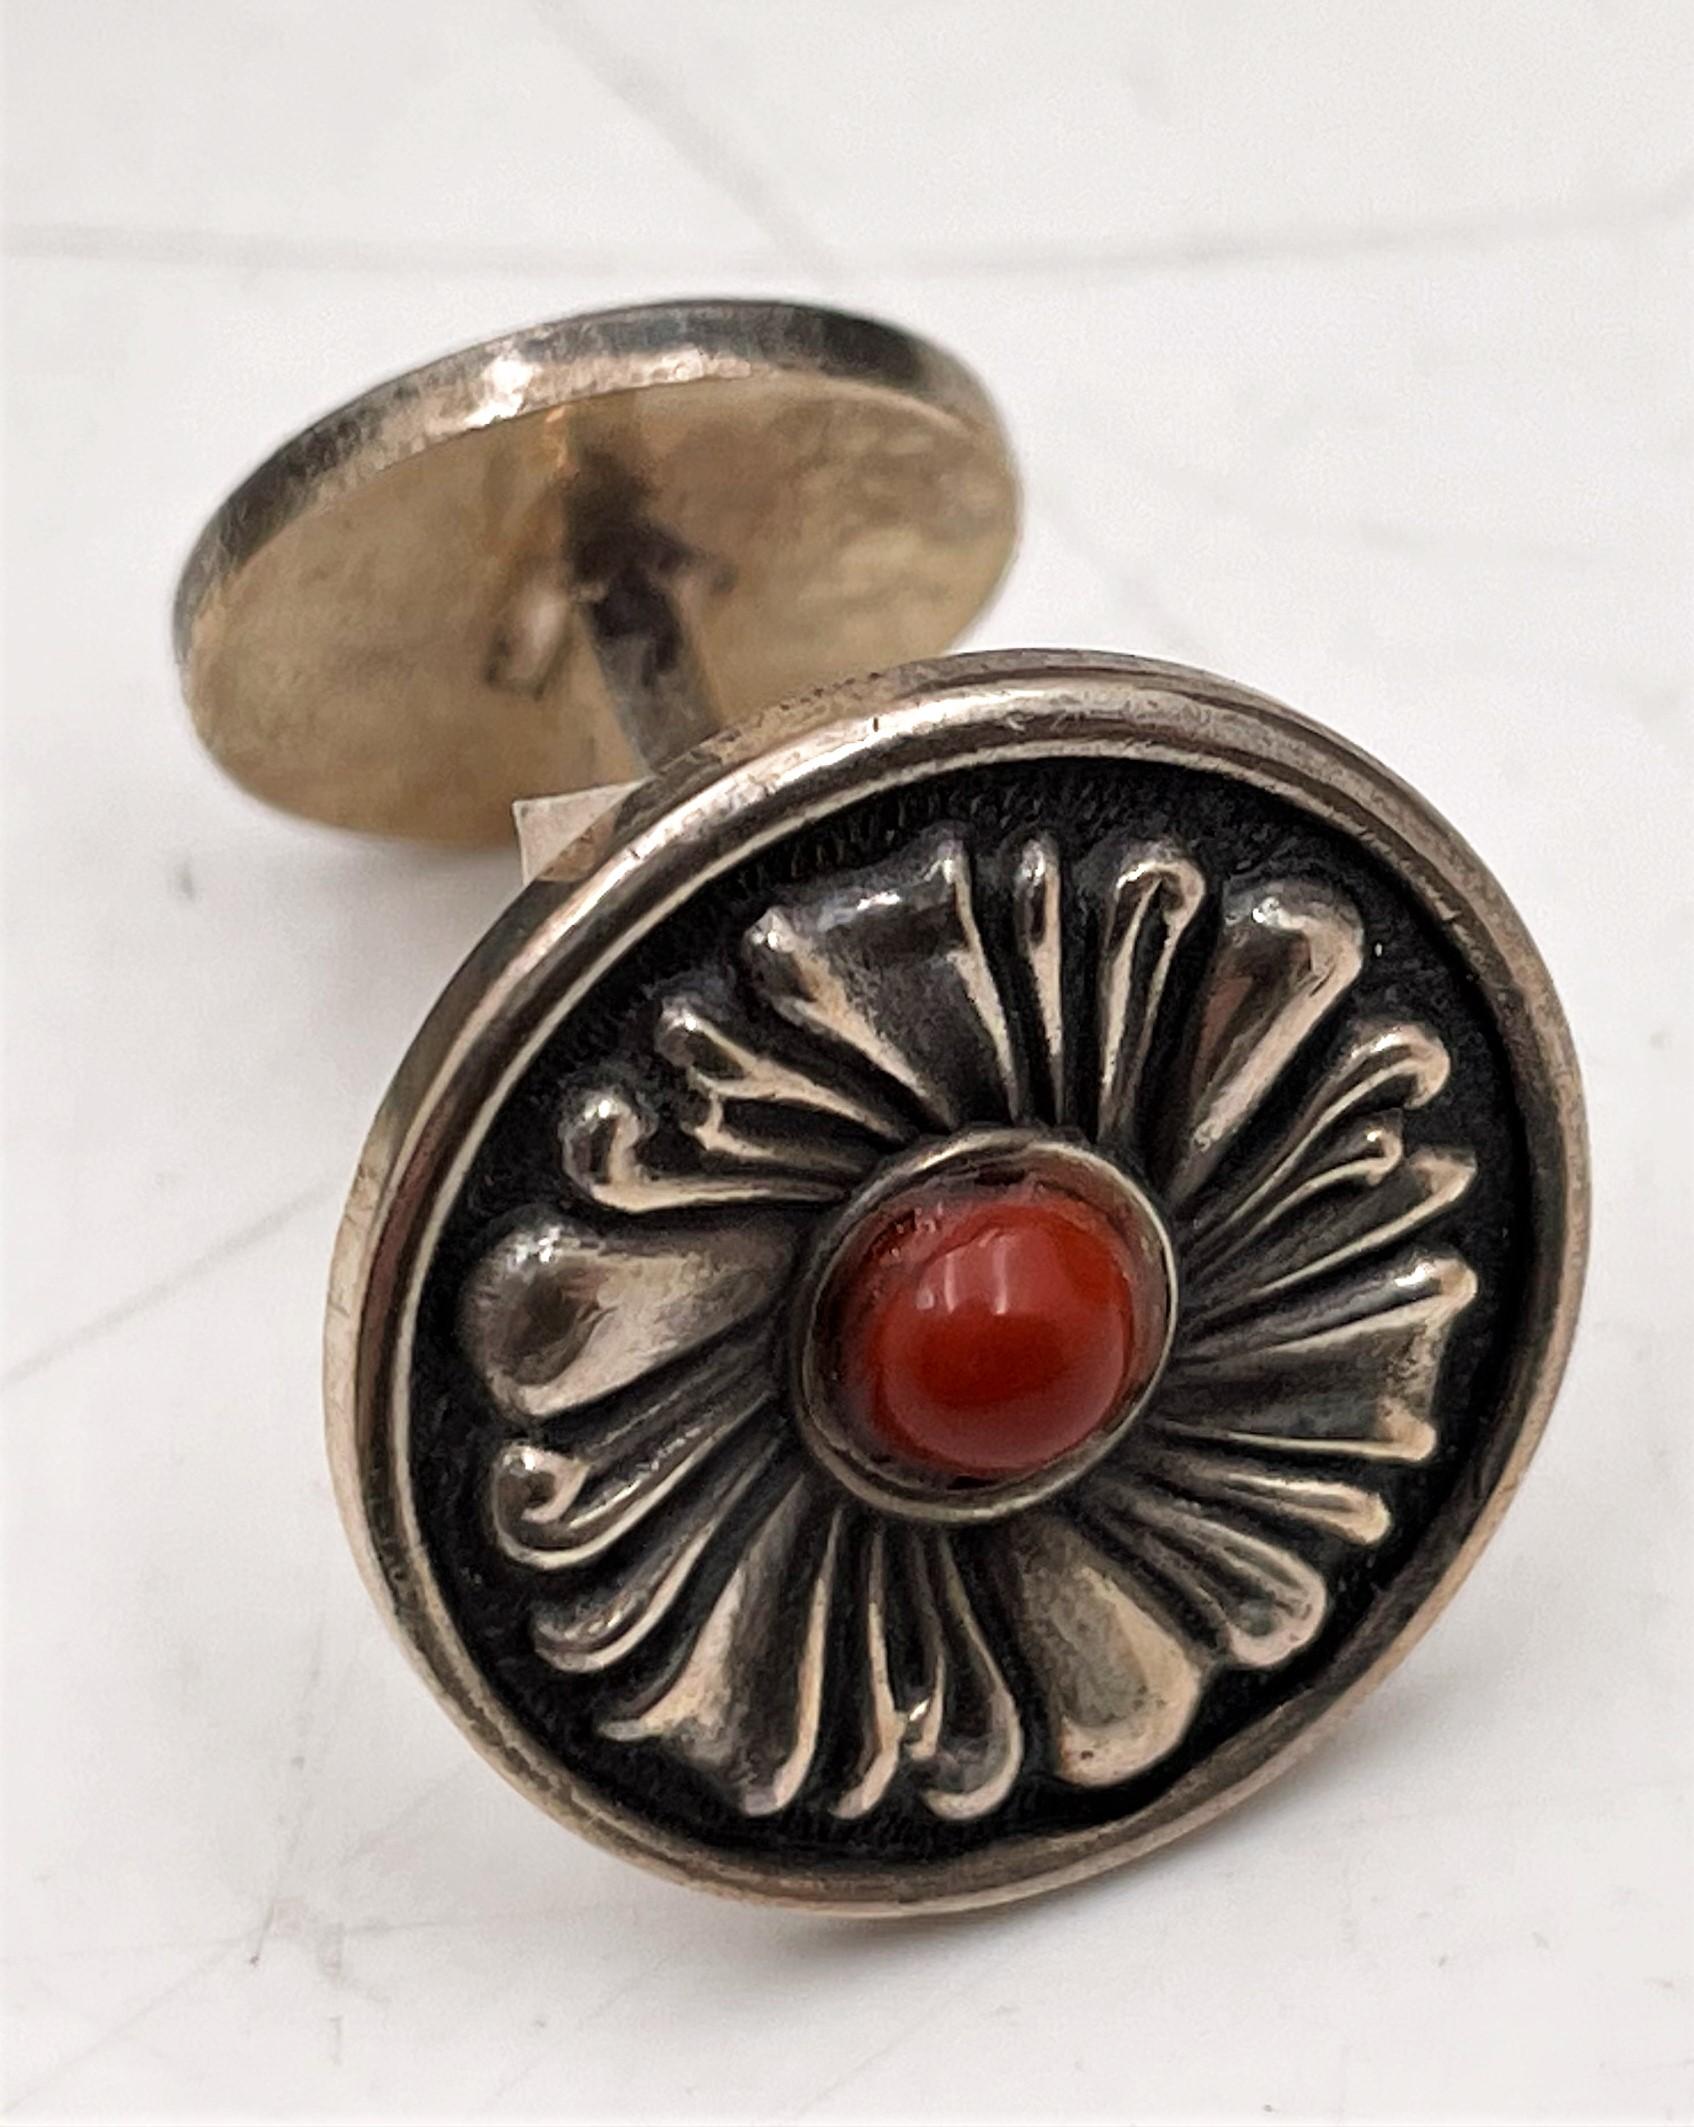 Gianmaria Buccellati, Italie, paire de boutons de manchette en argent sterling avec jaspe rouge au centre, dans un beau motif floral, mesurant 2/3'' de diamètre, et portant des poinçons. Vendu dans sa boîte d'origine, jamais utilisé. 

Mario